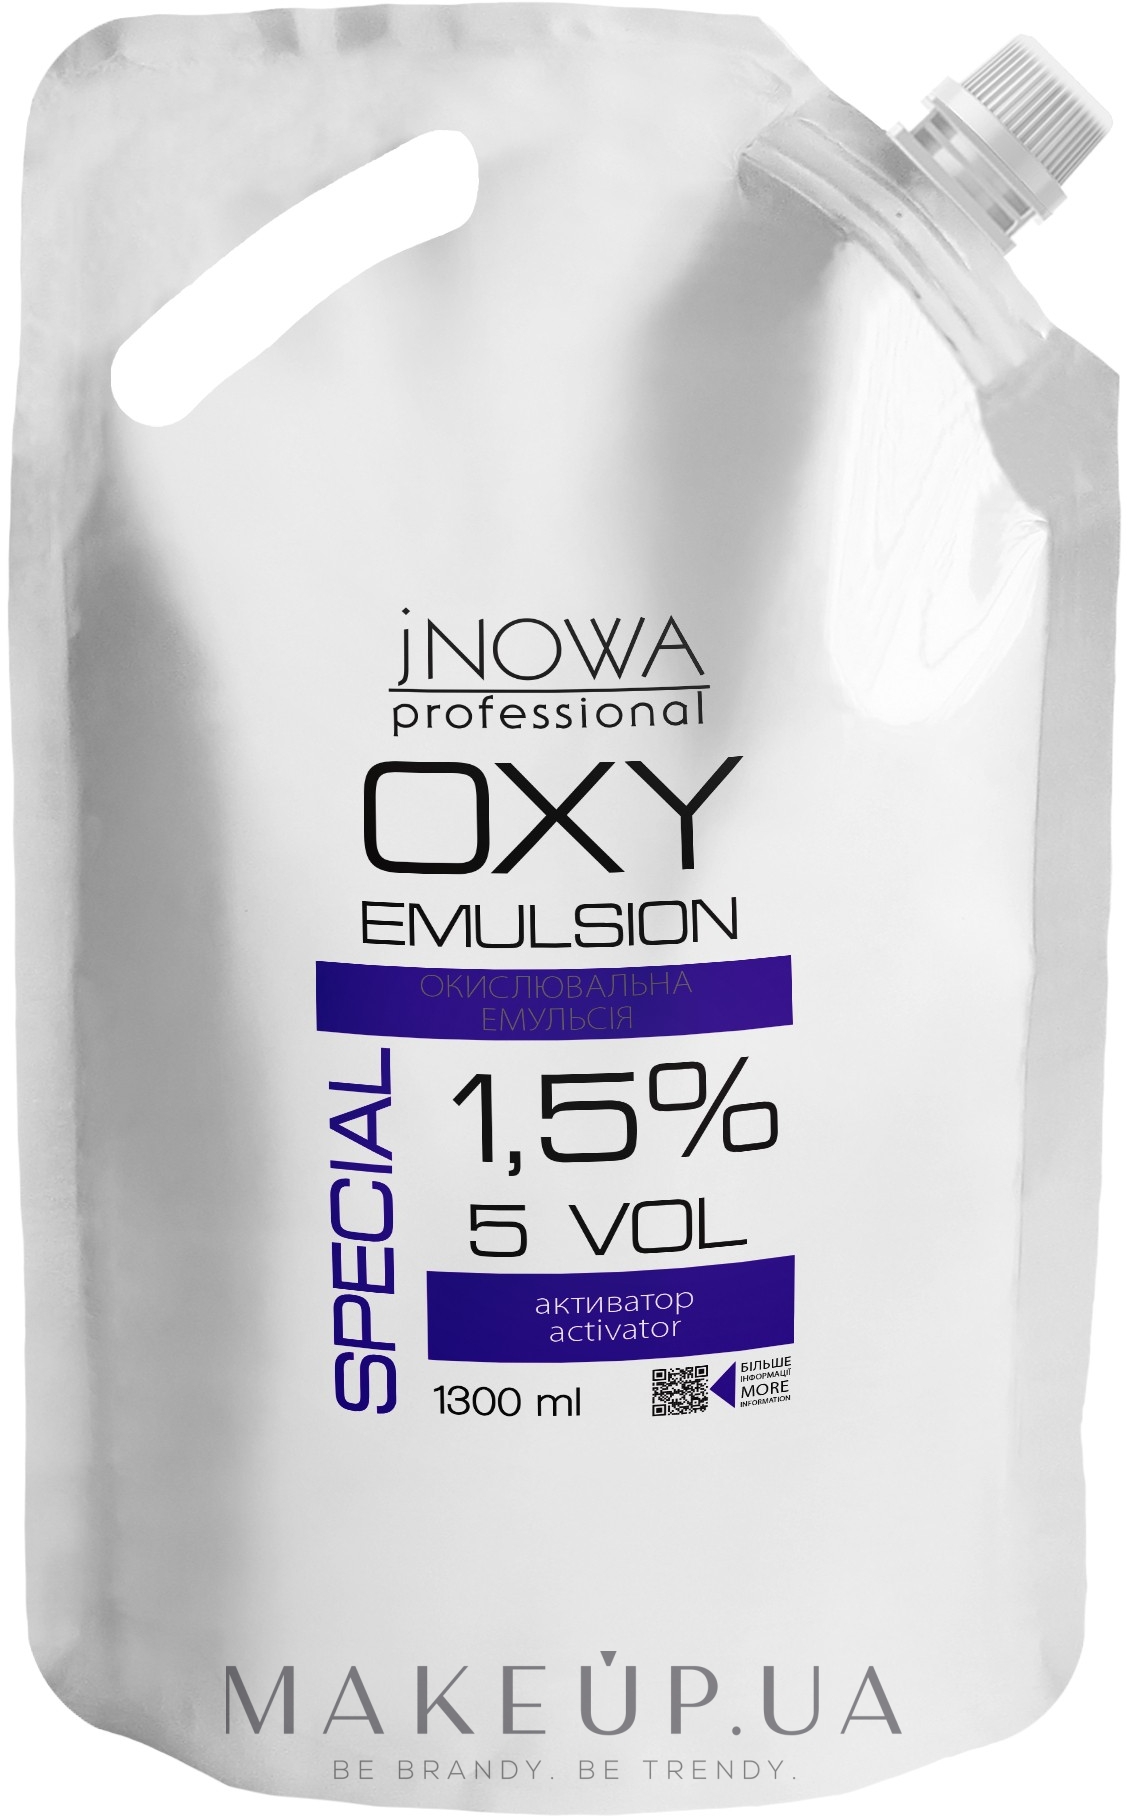 Окислительная эмульсия 1.5% - jNOWA Professional OXY Emulsion Special 5 vol (дой-пак) — фото 1300ml